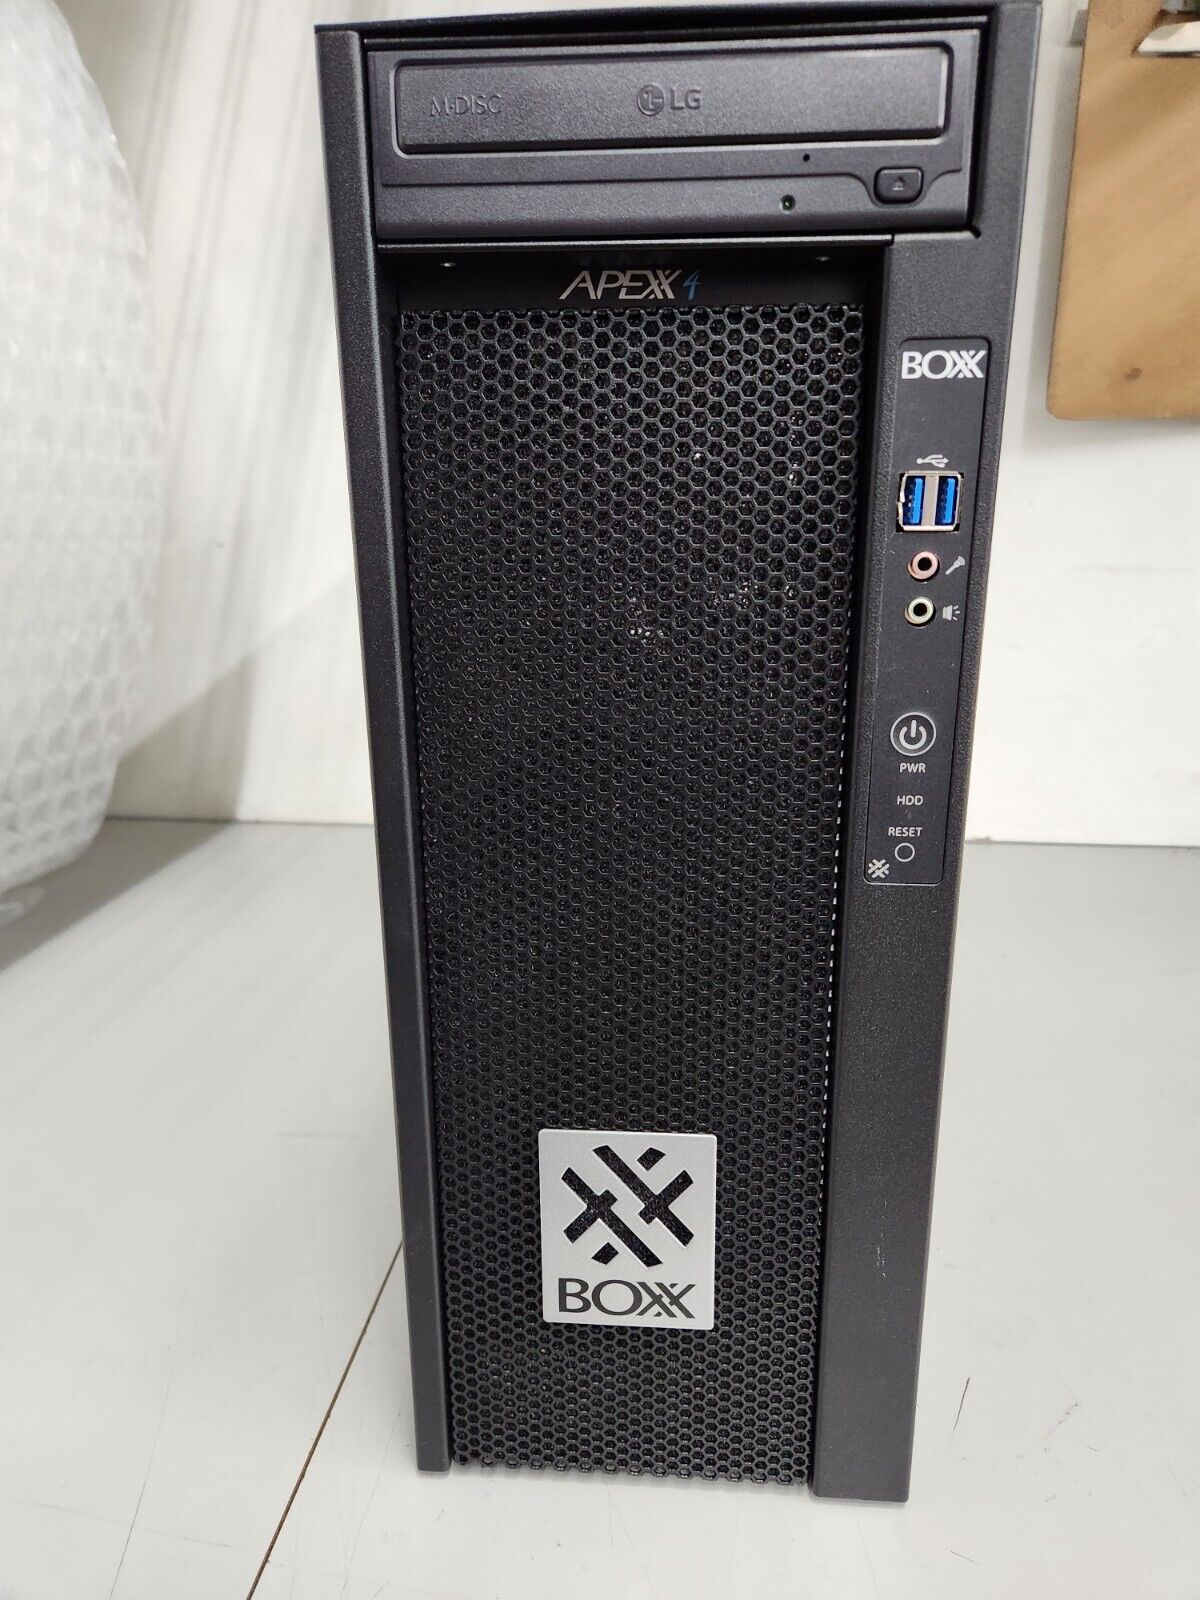 BOXX Apexx S4 16-Core i9-12900K Workstation 32GB RAM 500GB 2 X 1 TB SSD 2YR Warr